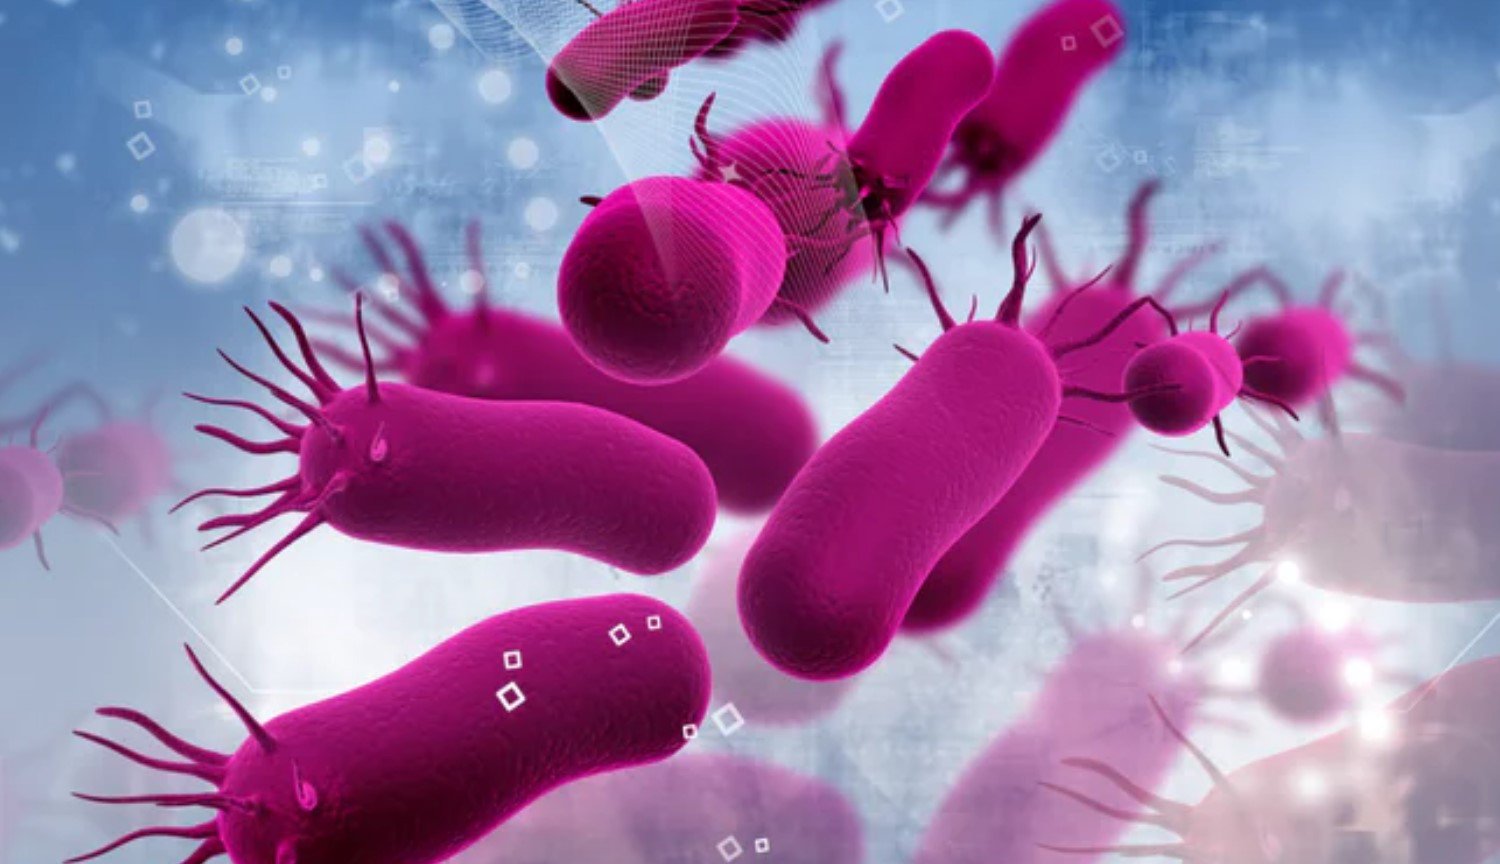 Zombie-tilstand: forskere har opdaget en ny tilstand af bakterier